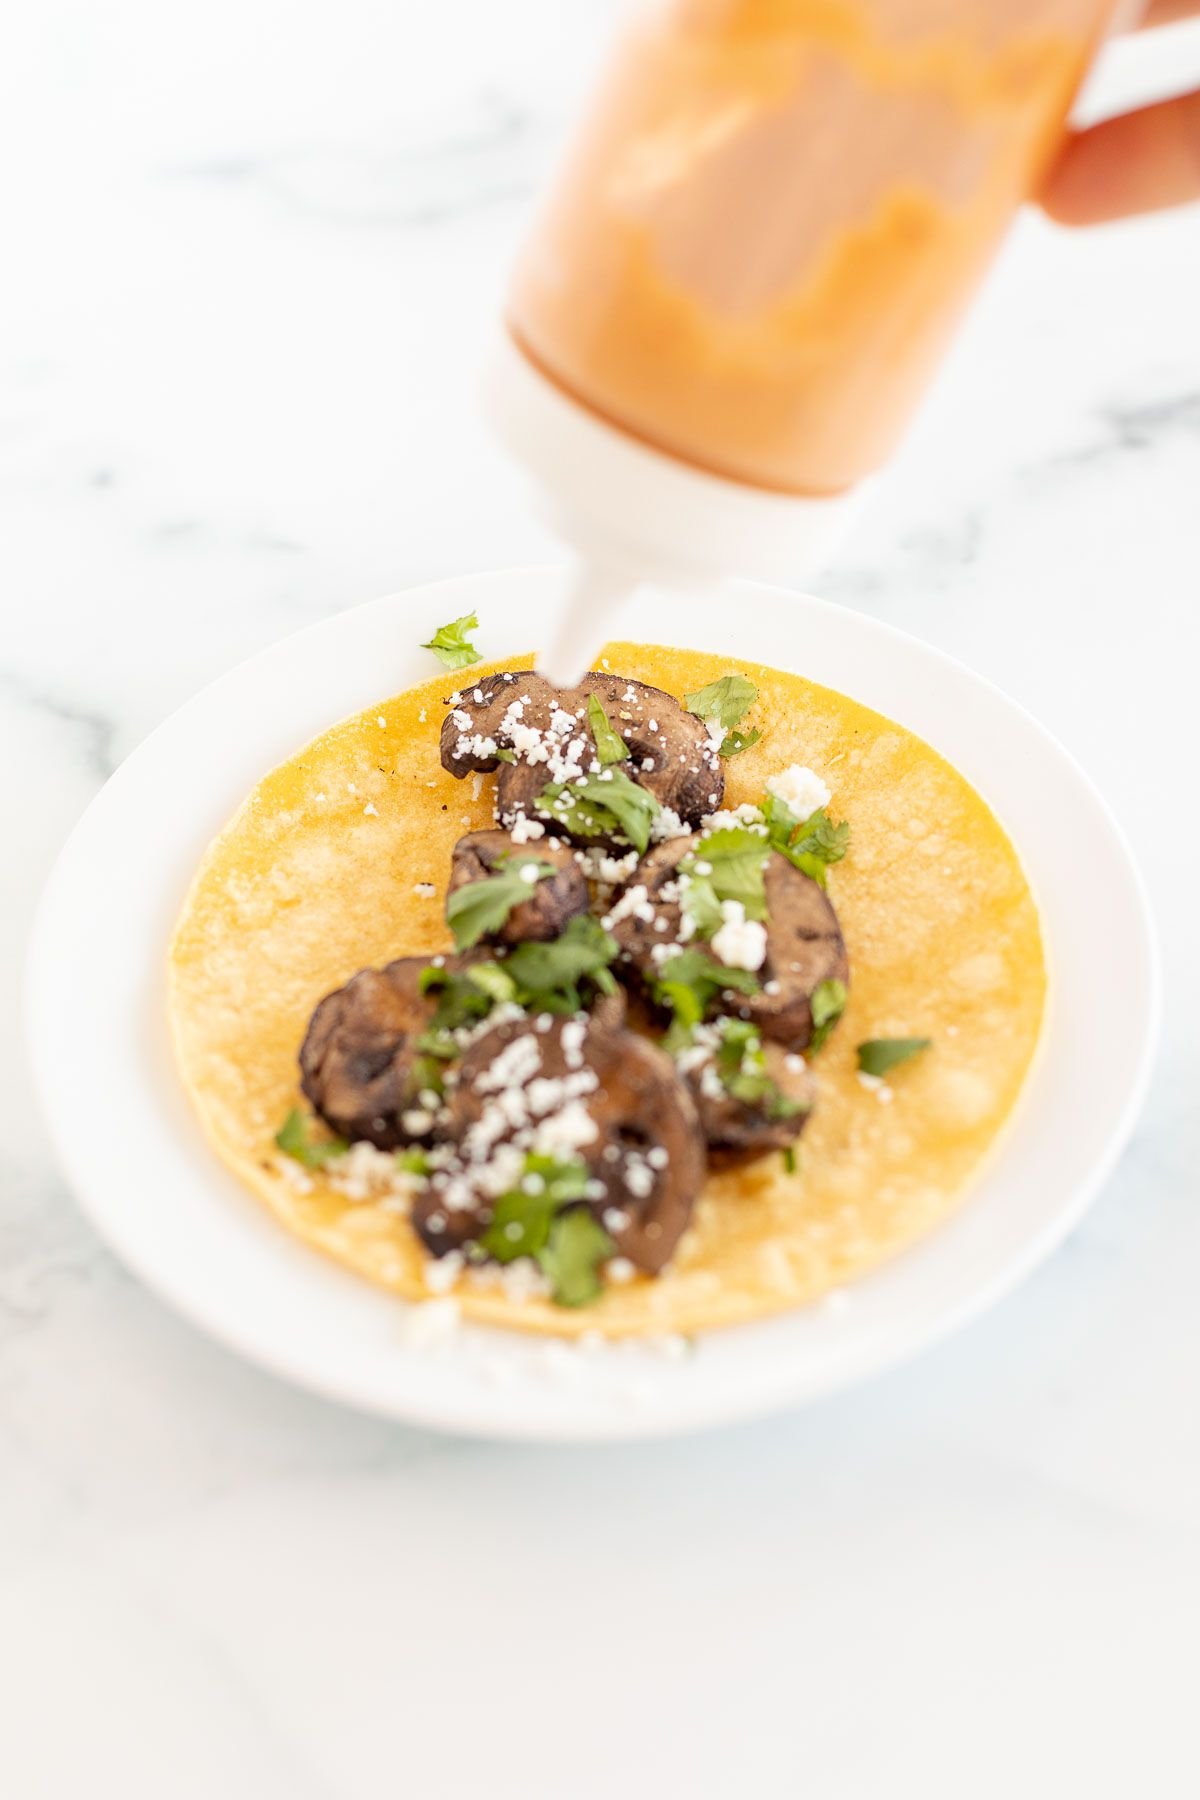 A portobello mushroom taco in a corn tortilla on a white plate